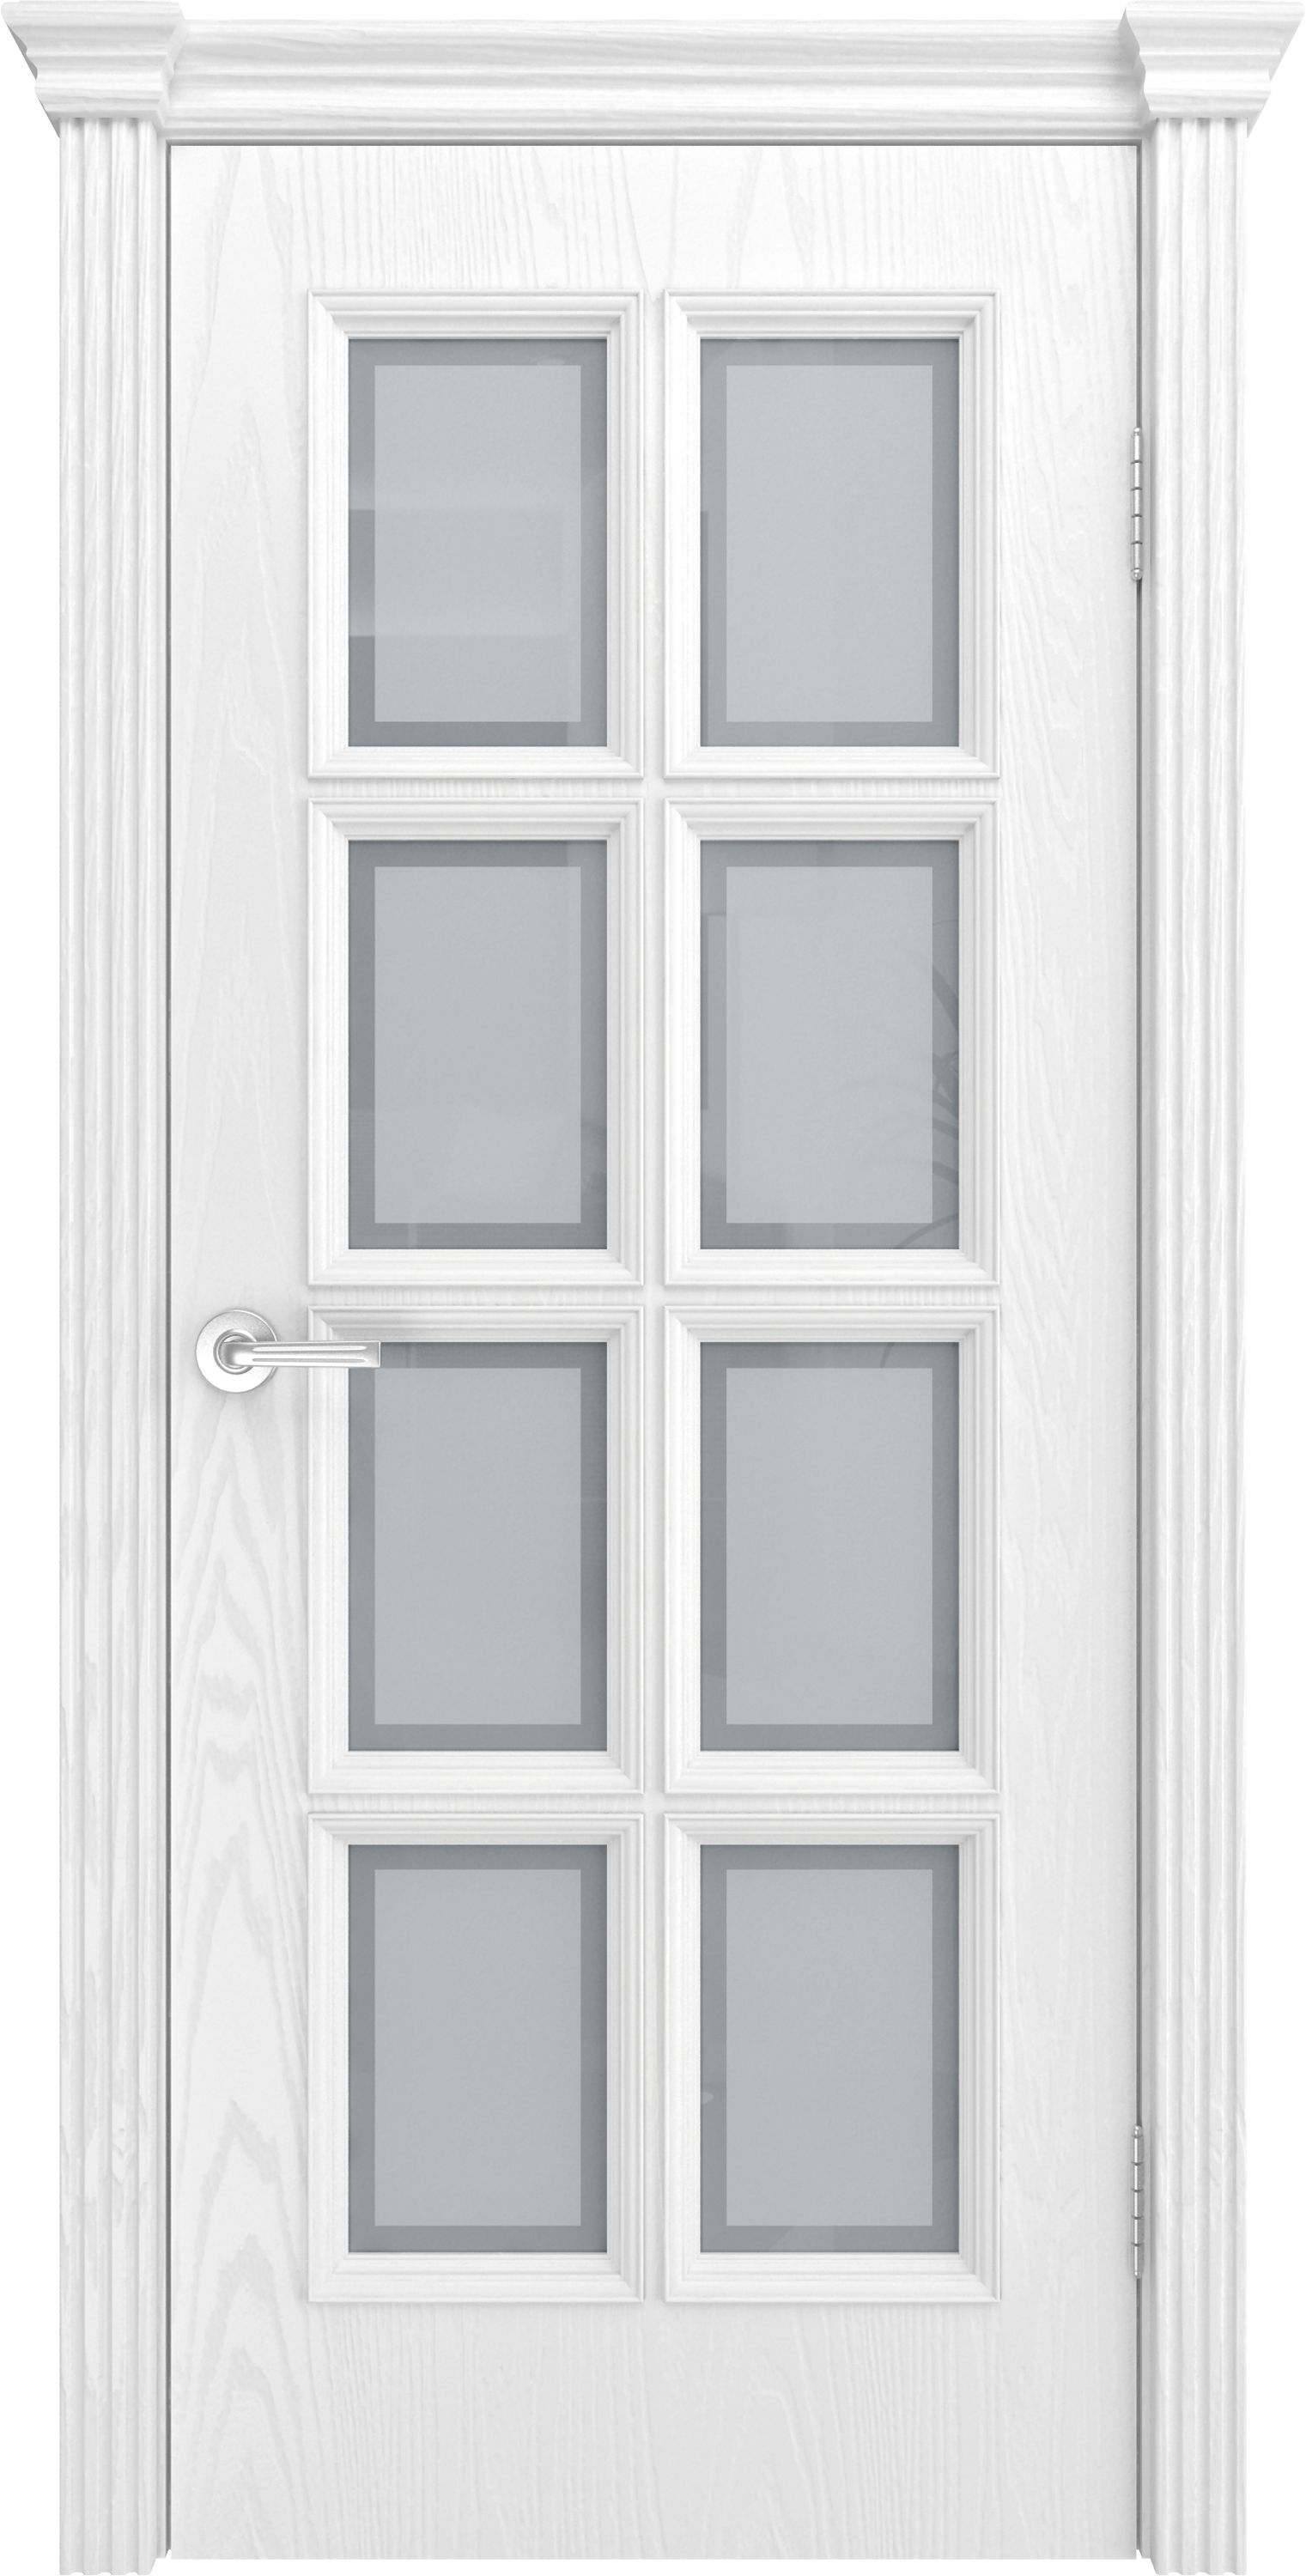 Двери шпонированные ТЕКОНА Фрейм 09 со стеклом Ясень белоснежный размер 200 х 60 см. артикул F0000070745